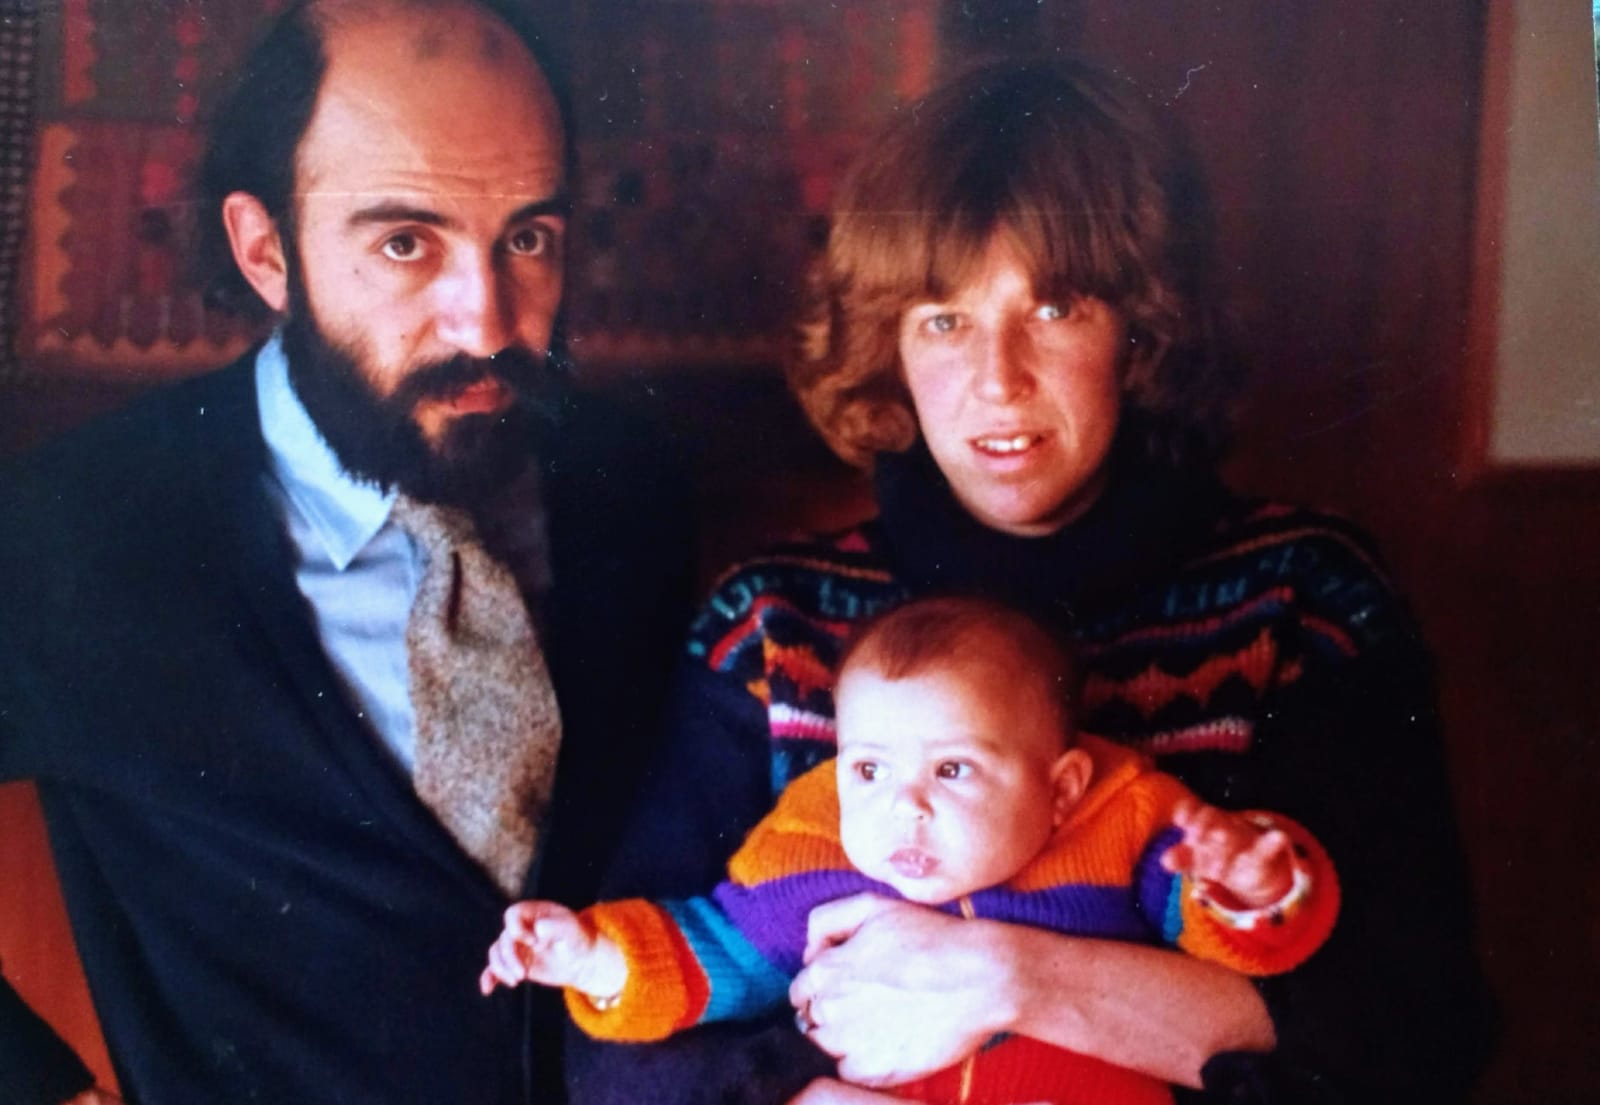 Héctor Libertella y Tamara Kamenszain, con su hijo Mauro en brazos.